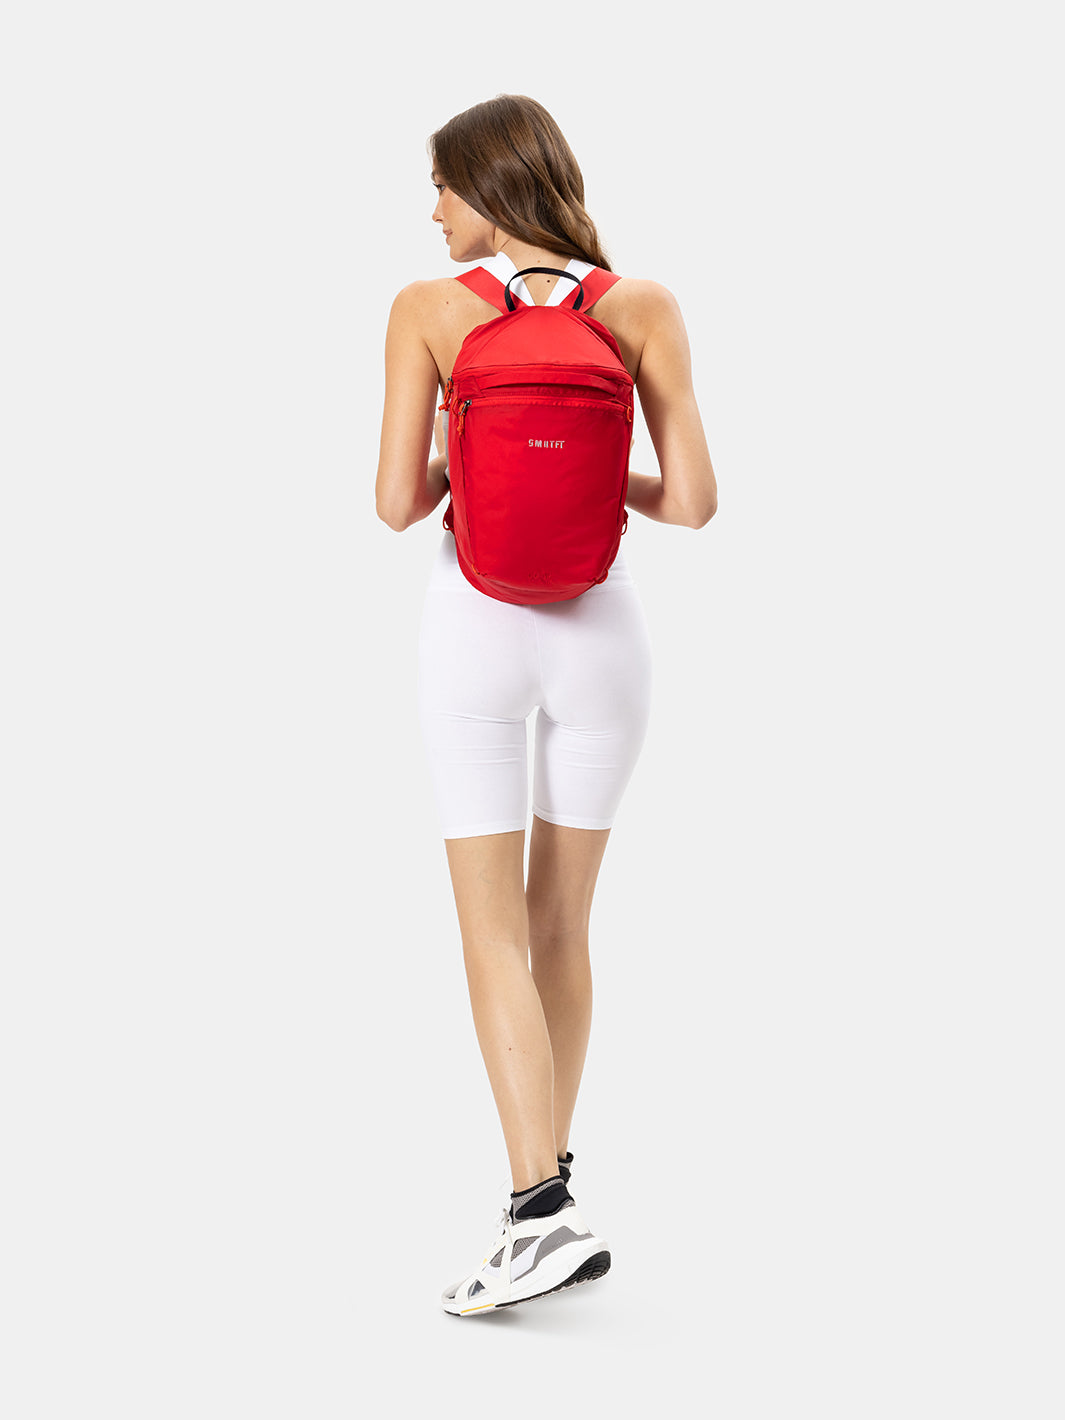 New Red SMRTFT Backpack | Backpacks For Women